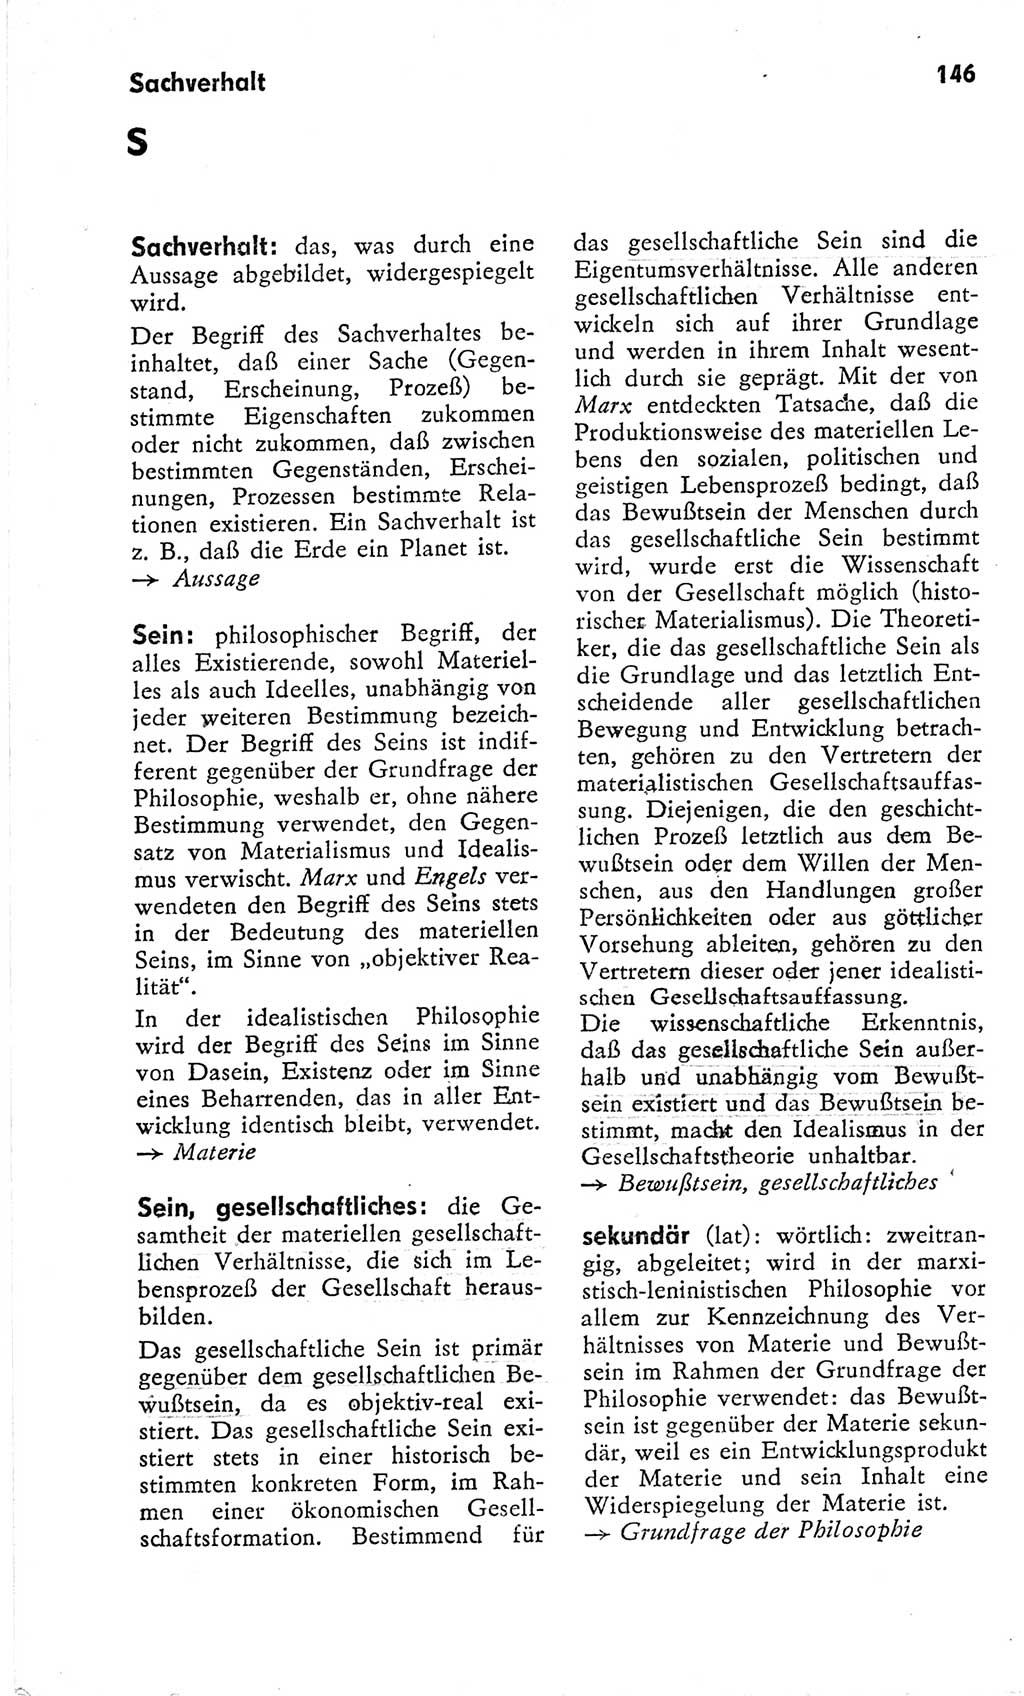 Kleines Wörterbuch der marxistisch-leninistischen Philosophie [Deutsche Demokratische Republik (DDR)] 1966, Seite 146 (Kl. Wb. ML Phil. DDR 1966, S. 146)